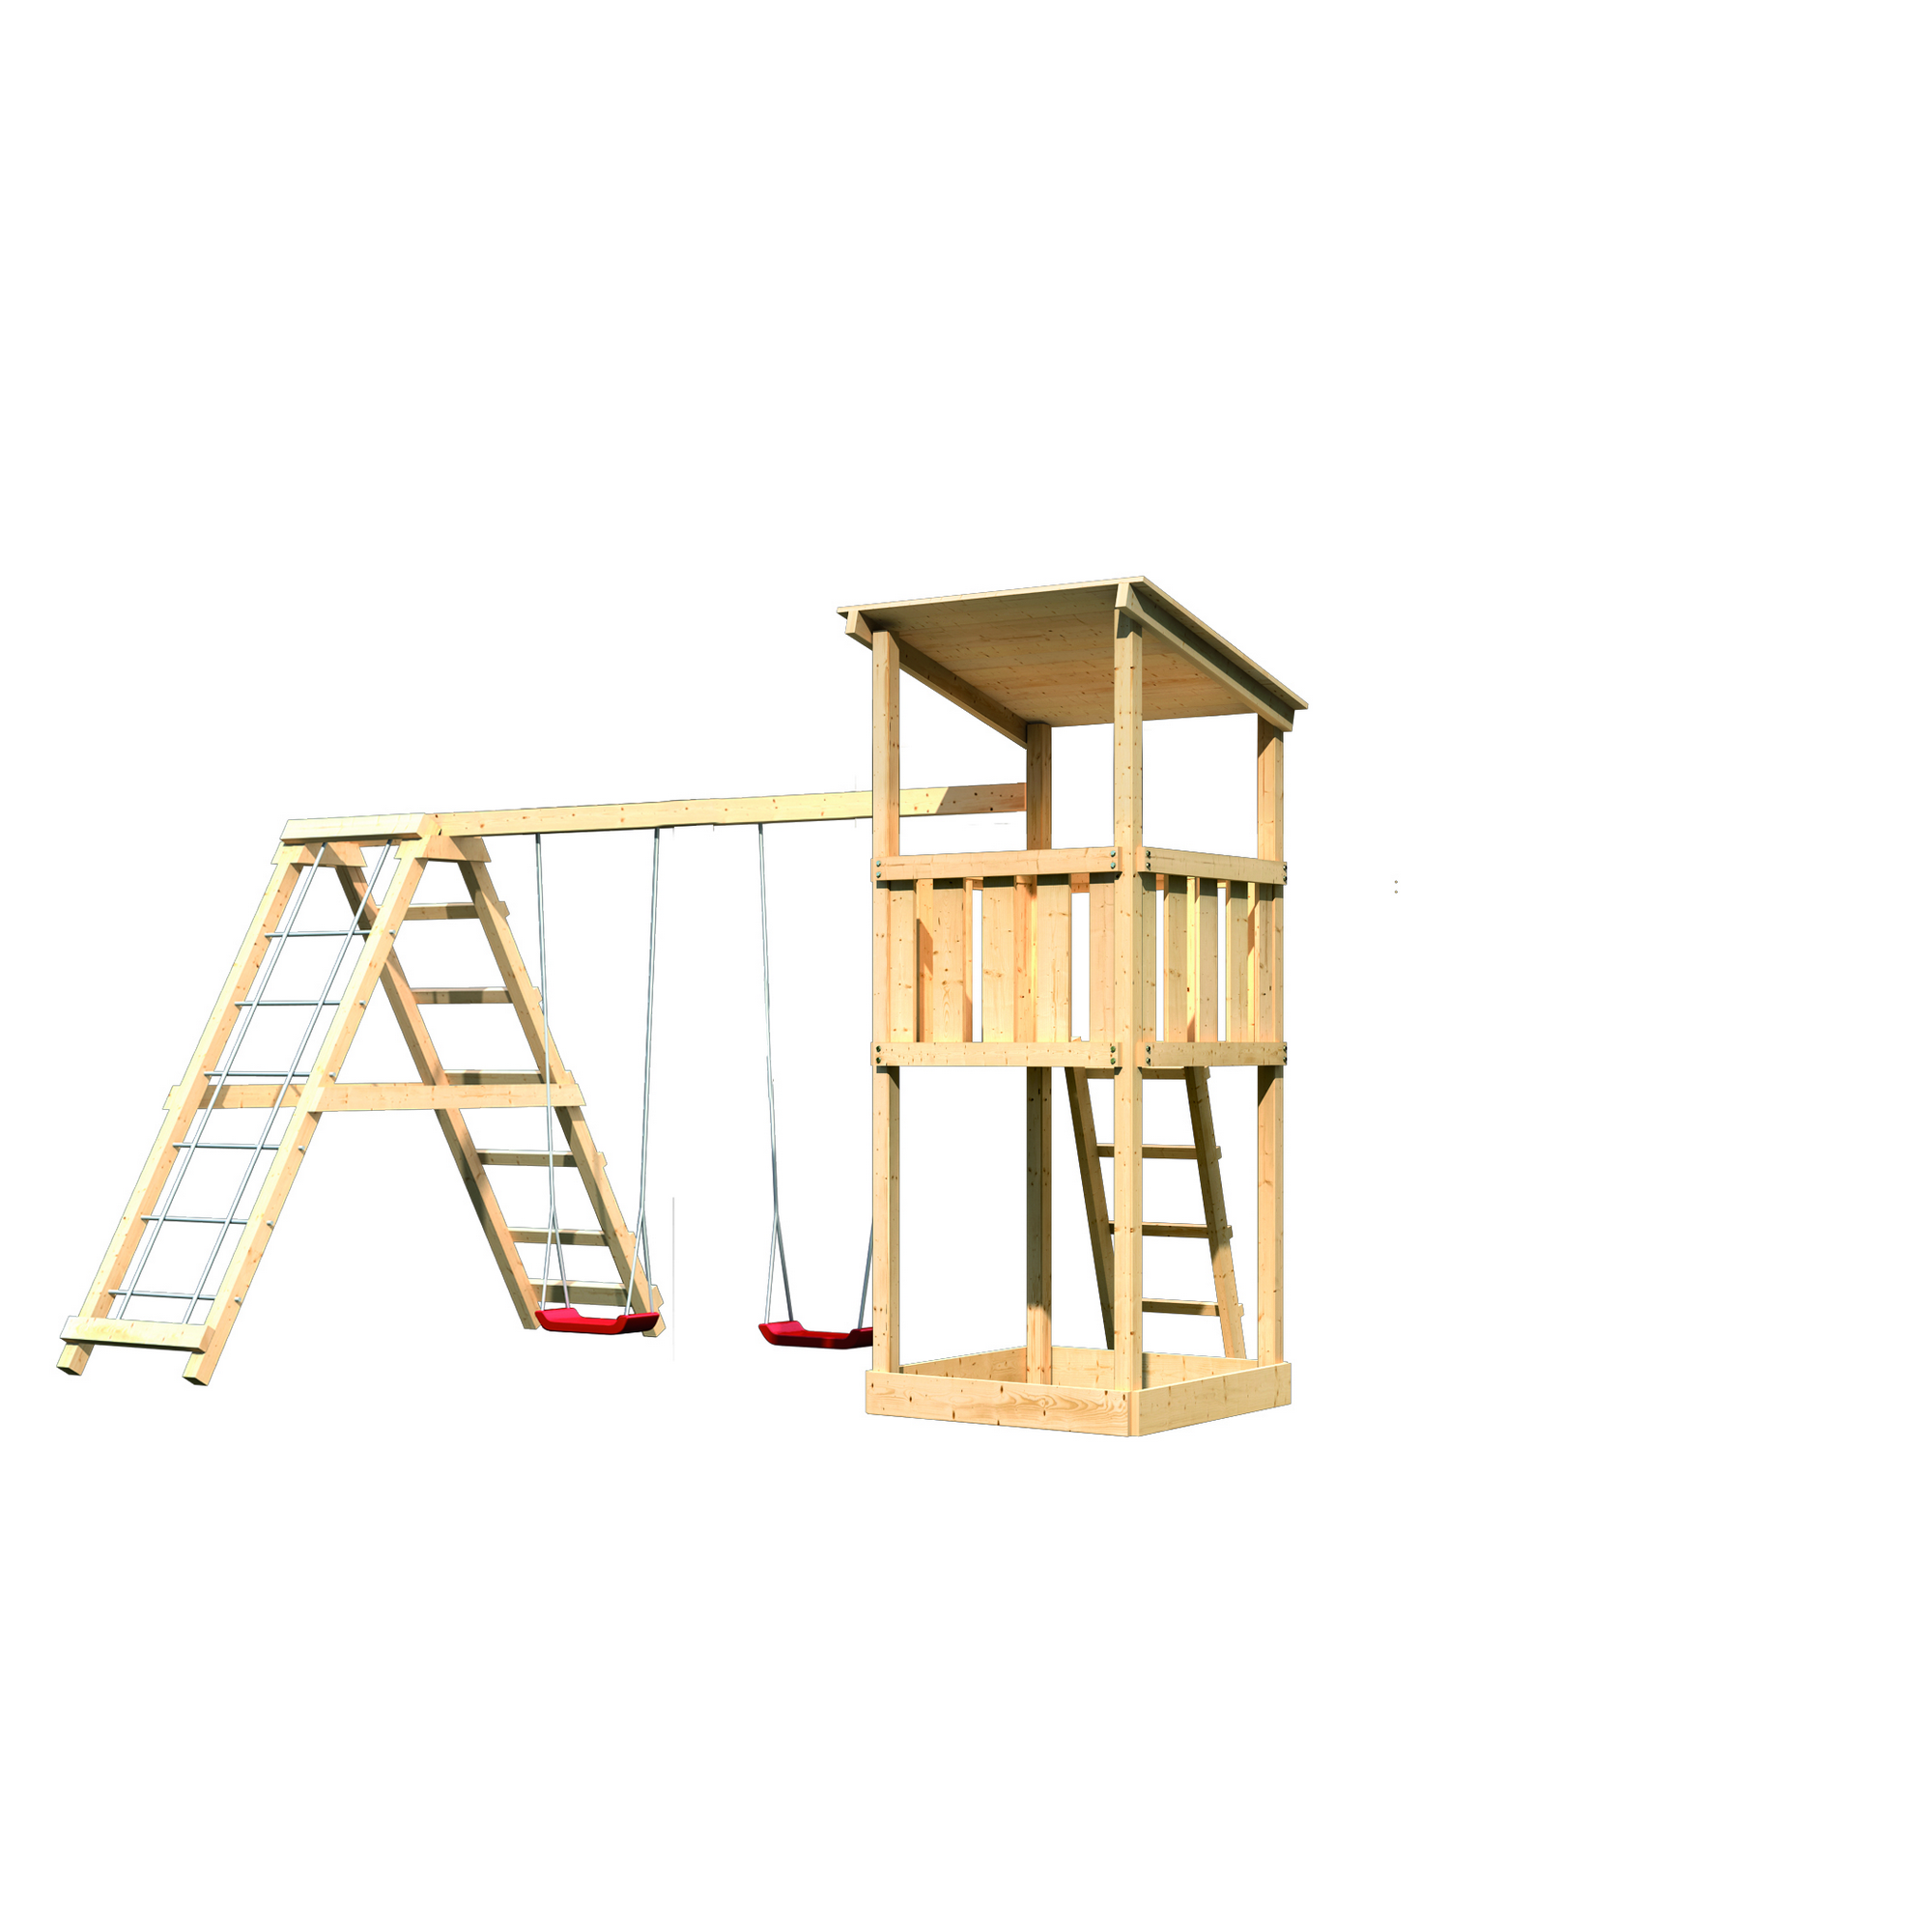 Spielturm 'Anna' Doppelschaukel, Klettergerüst, 415 x 264 x 270 cm + product picture